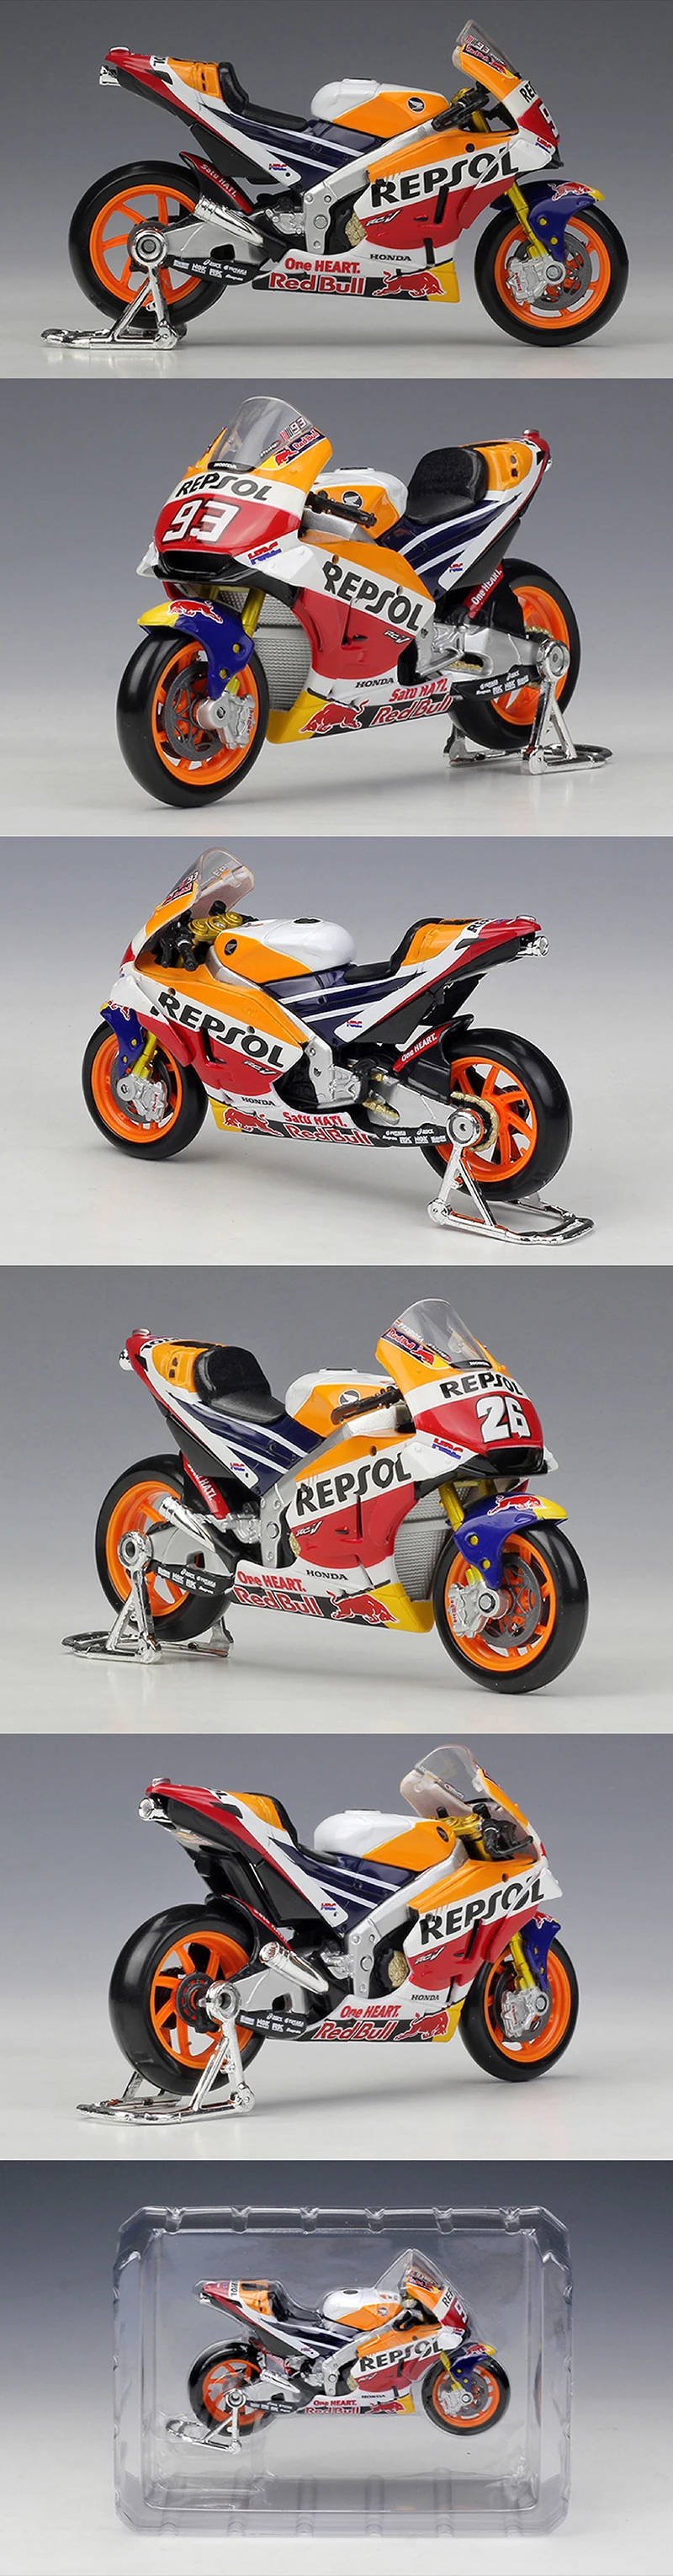 Maisto 1:18 модели мотоциклов GP racing RC213V 93 26 модельный двигатель велосипед миниатюрная гоночная игрушка для коллекции подарков